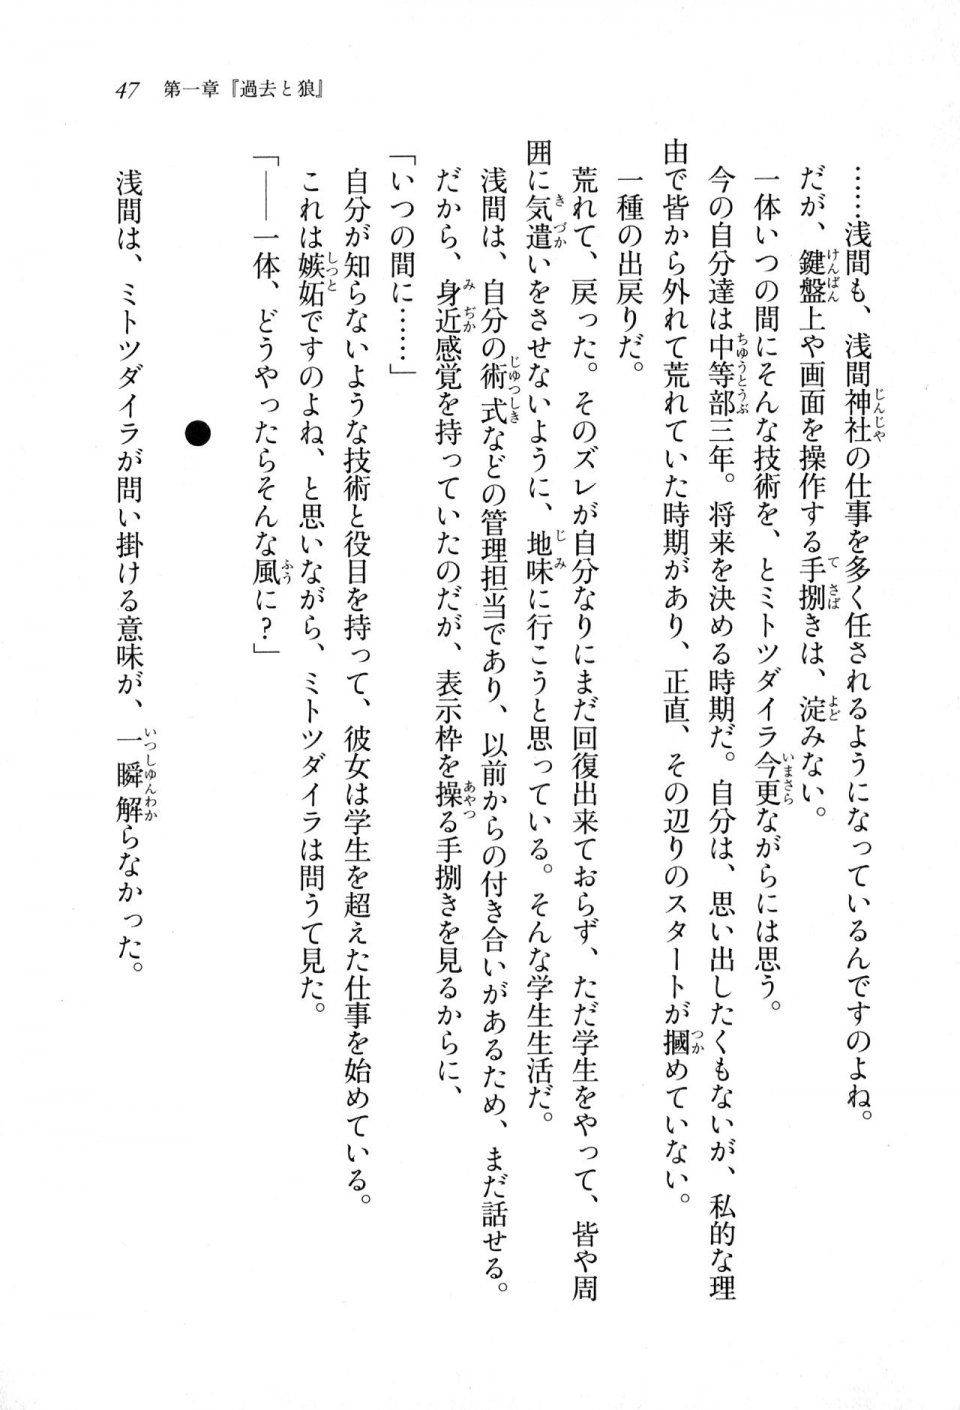 Kyoukai Senjou no Horizon LN Sidestory Vol 1 - Photo #45